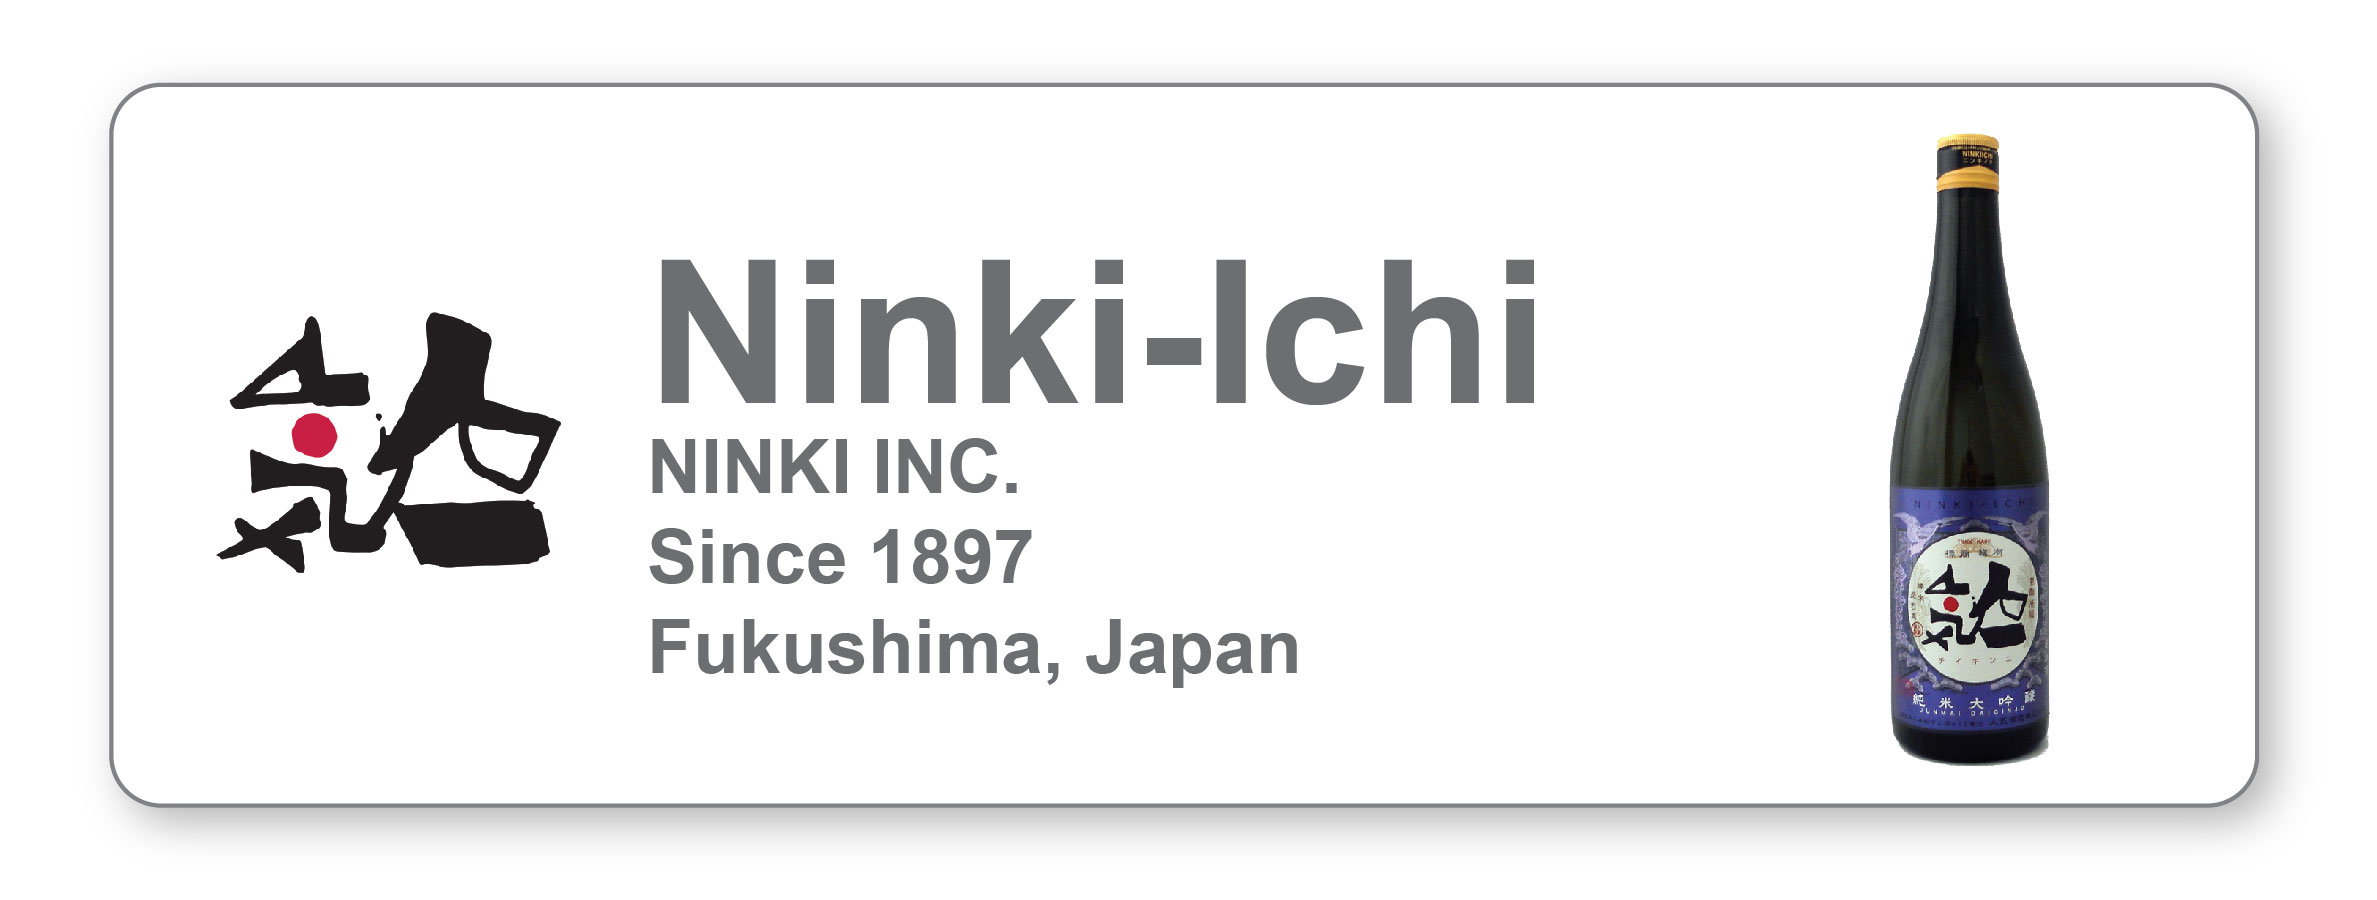 Japanese Sake Ninki Ichi